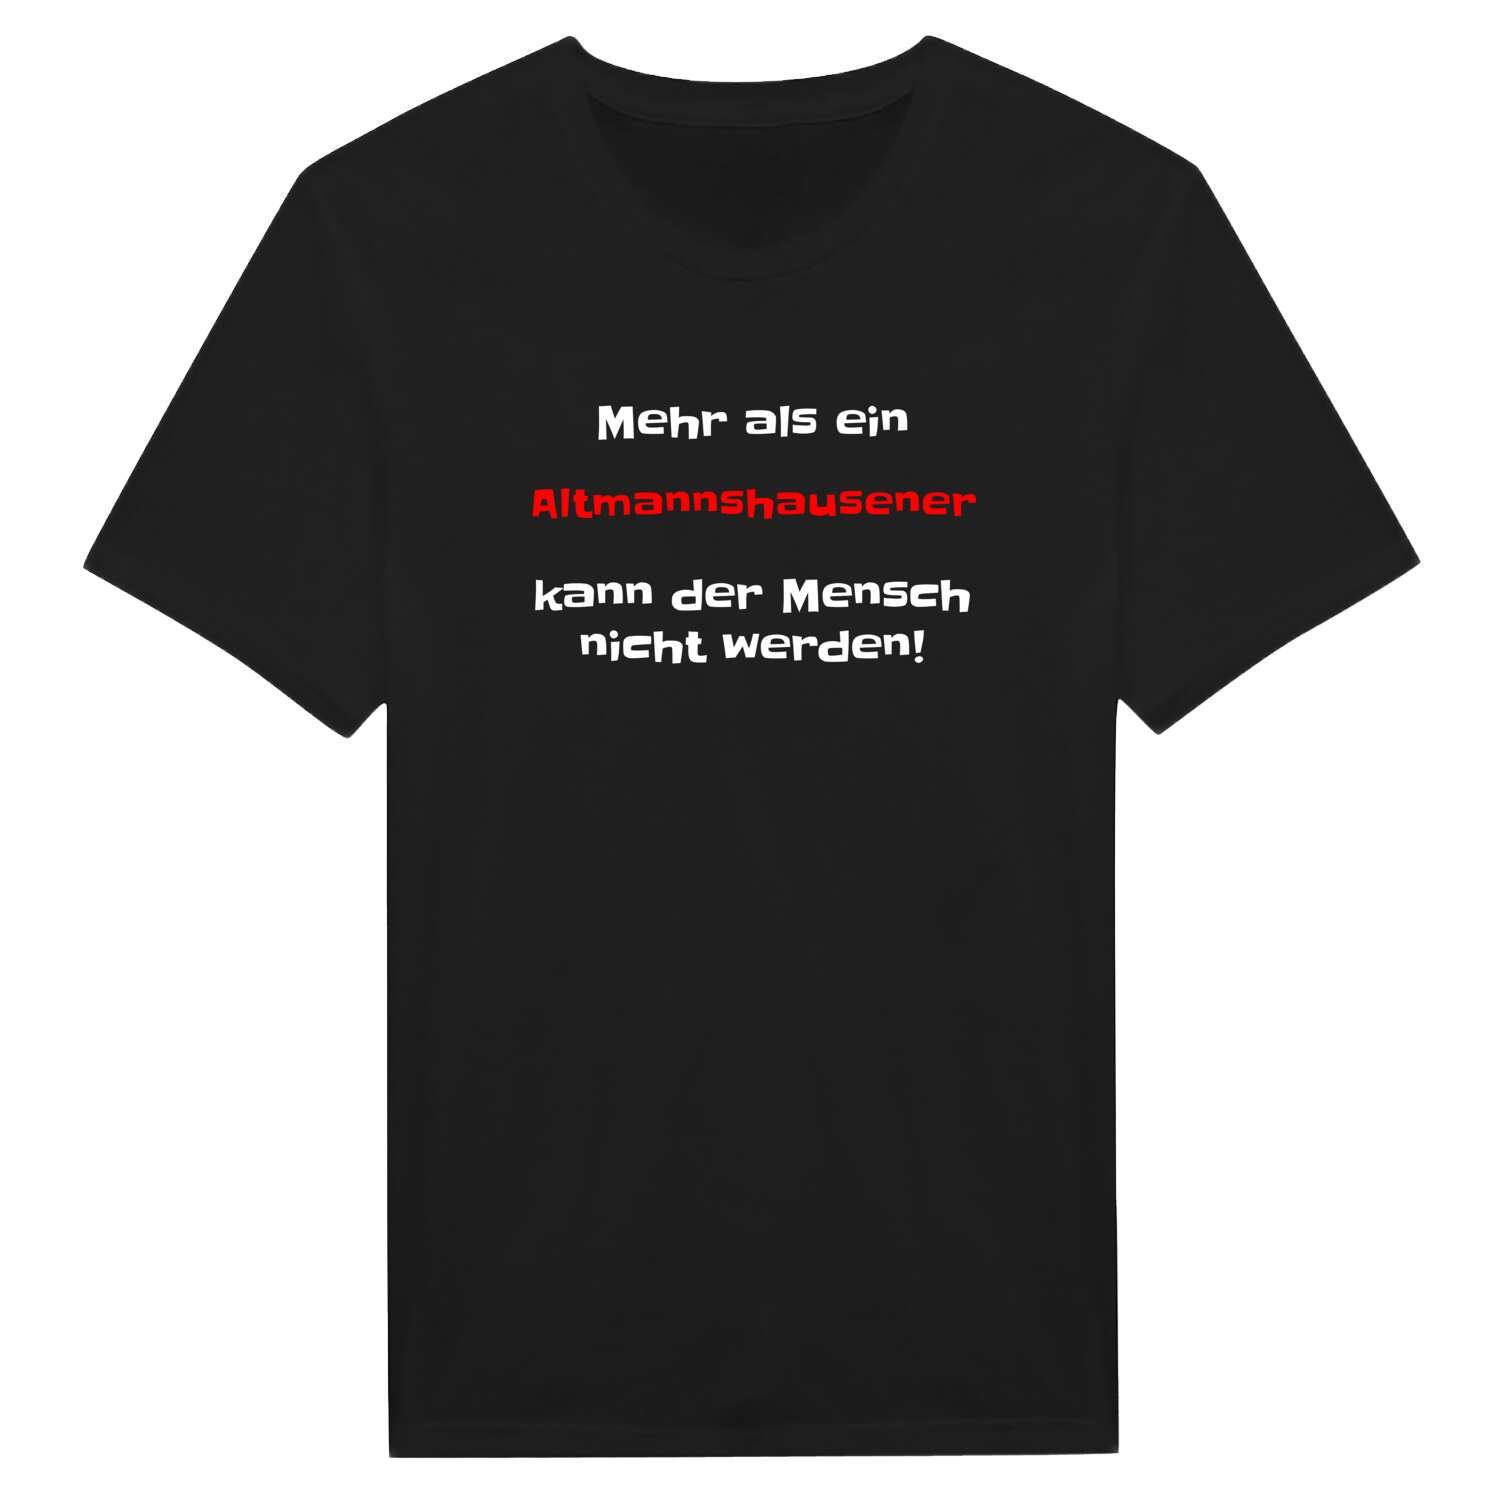 Altmannshausen T-Shirt »Mehr als ein«